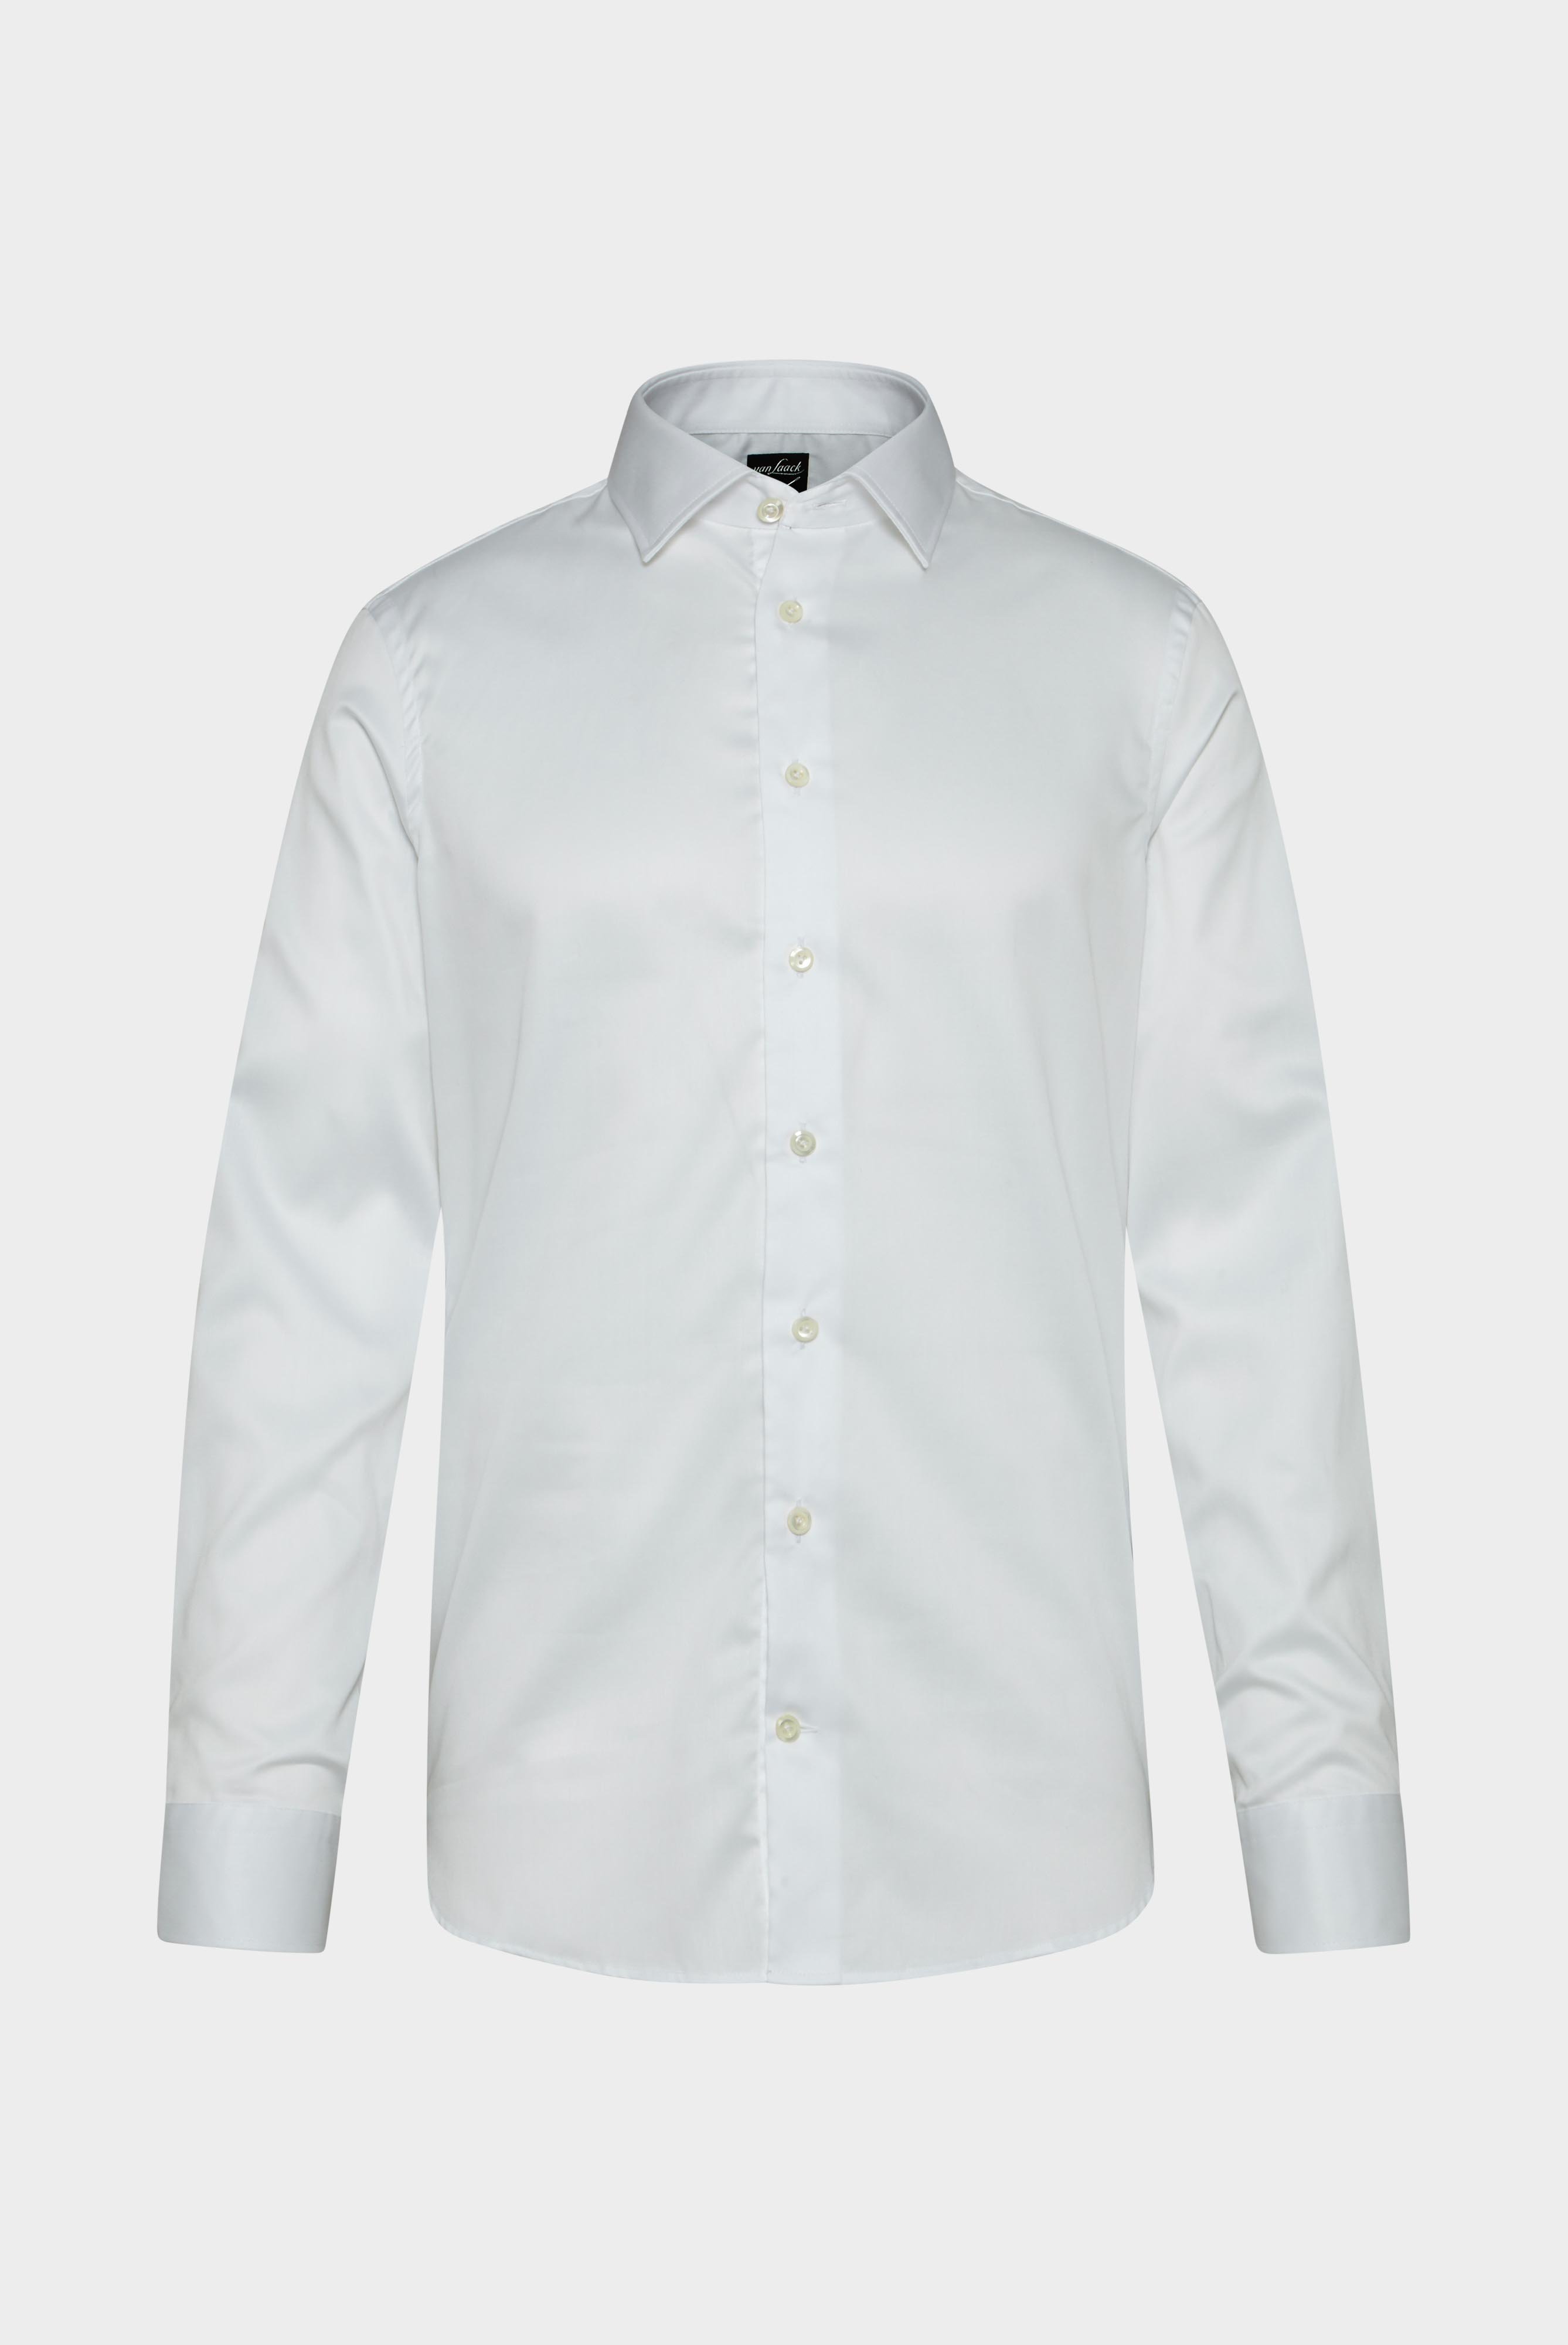 Bügelleichte Hemden+Bügelfreies Twill Hemd Slim Fit+20.2010.BQ.132241.000.46